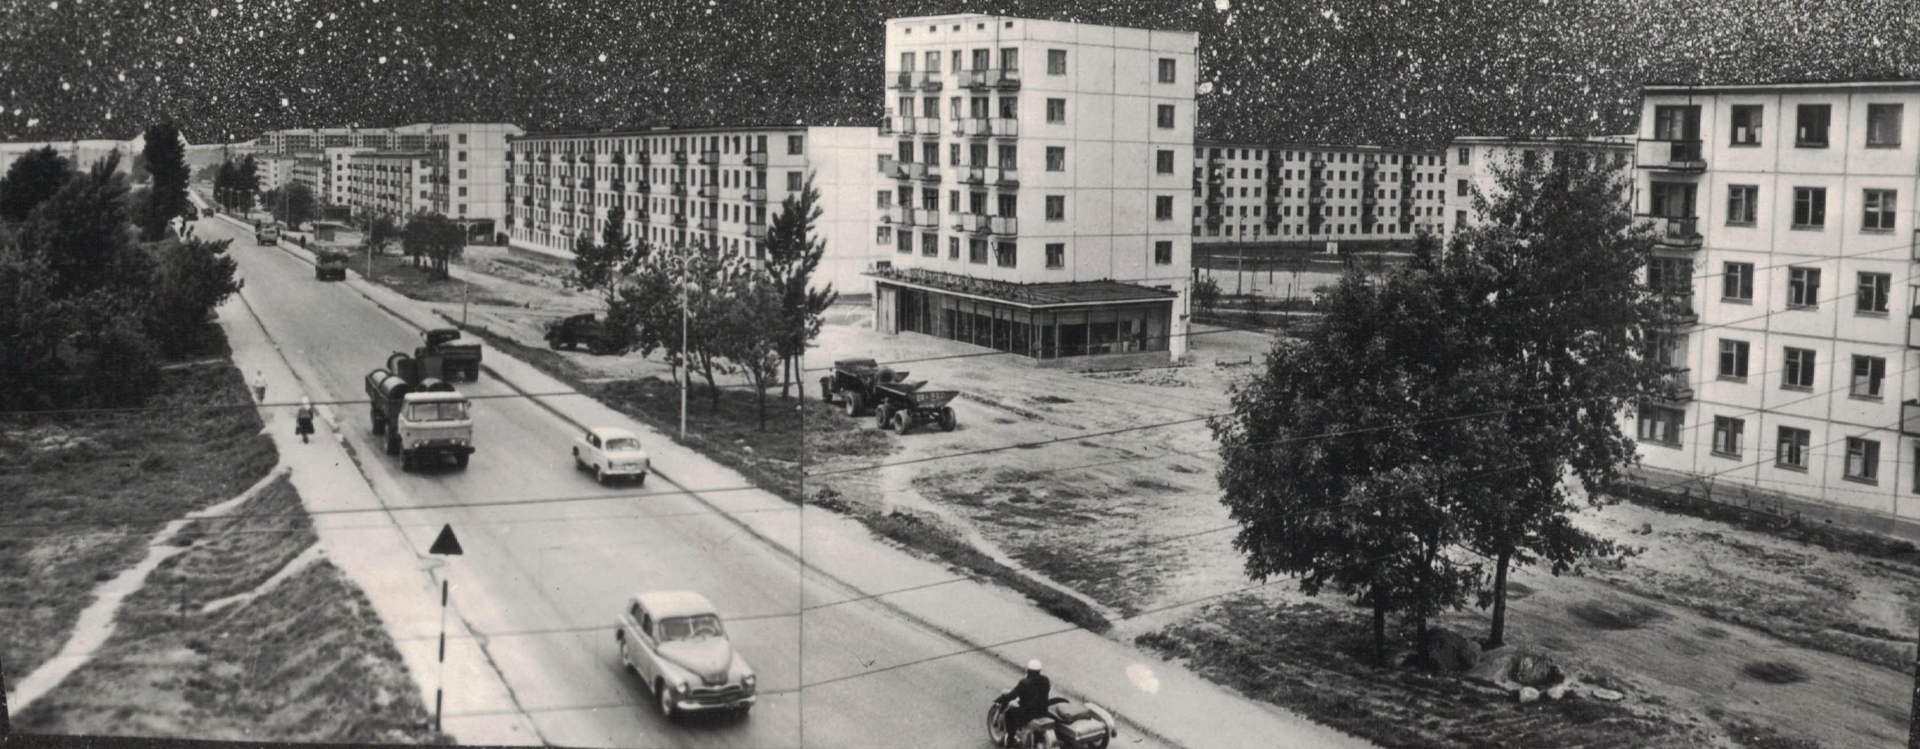 Смоленское шоссе в конце 1960-х годов. Фото из архива Владимира Горидовца